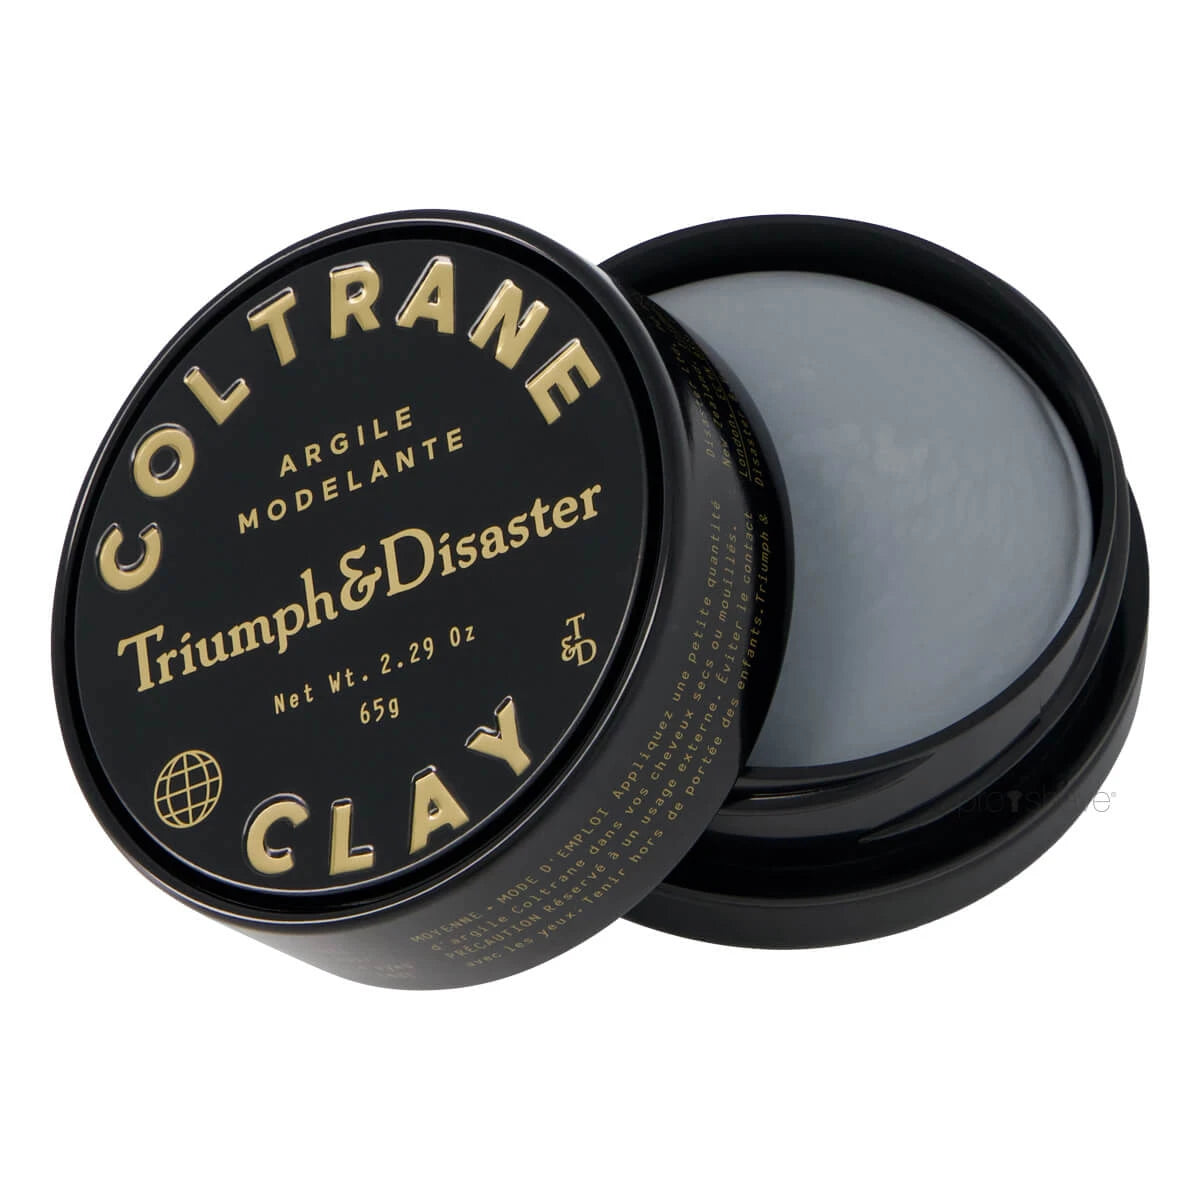 Triumph & Disaster, Coltrane Clay